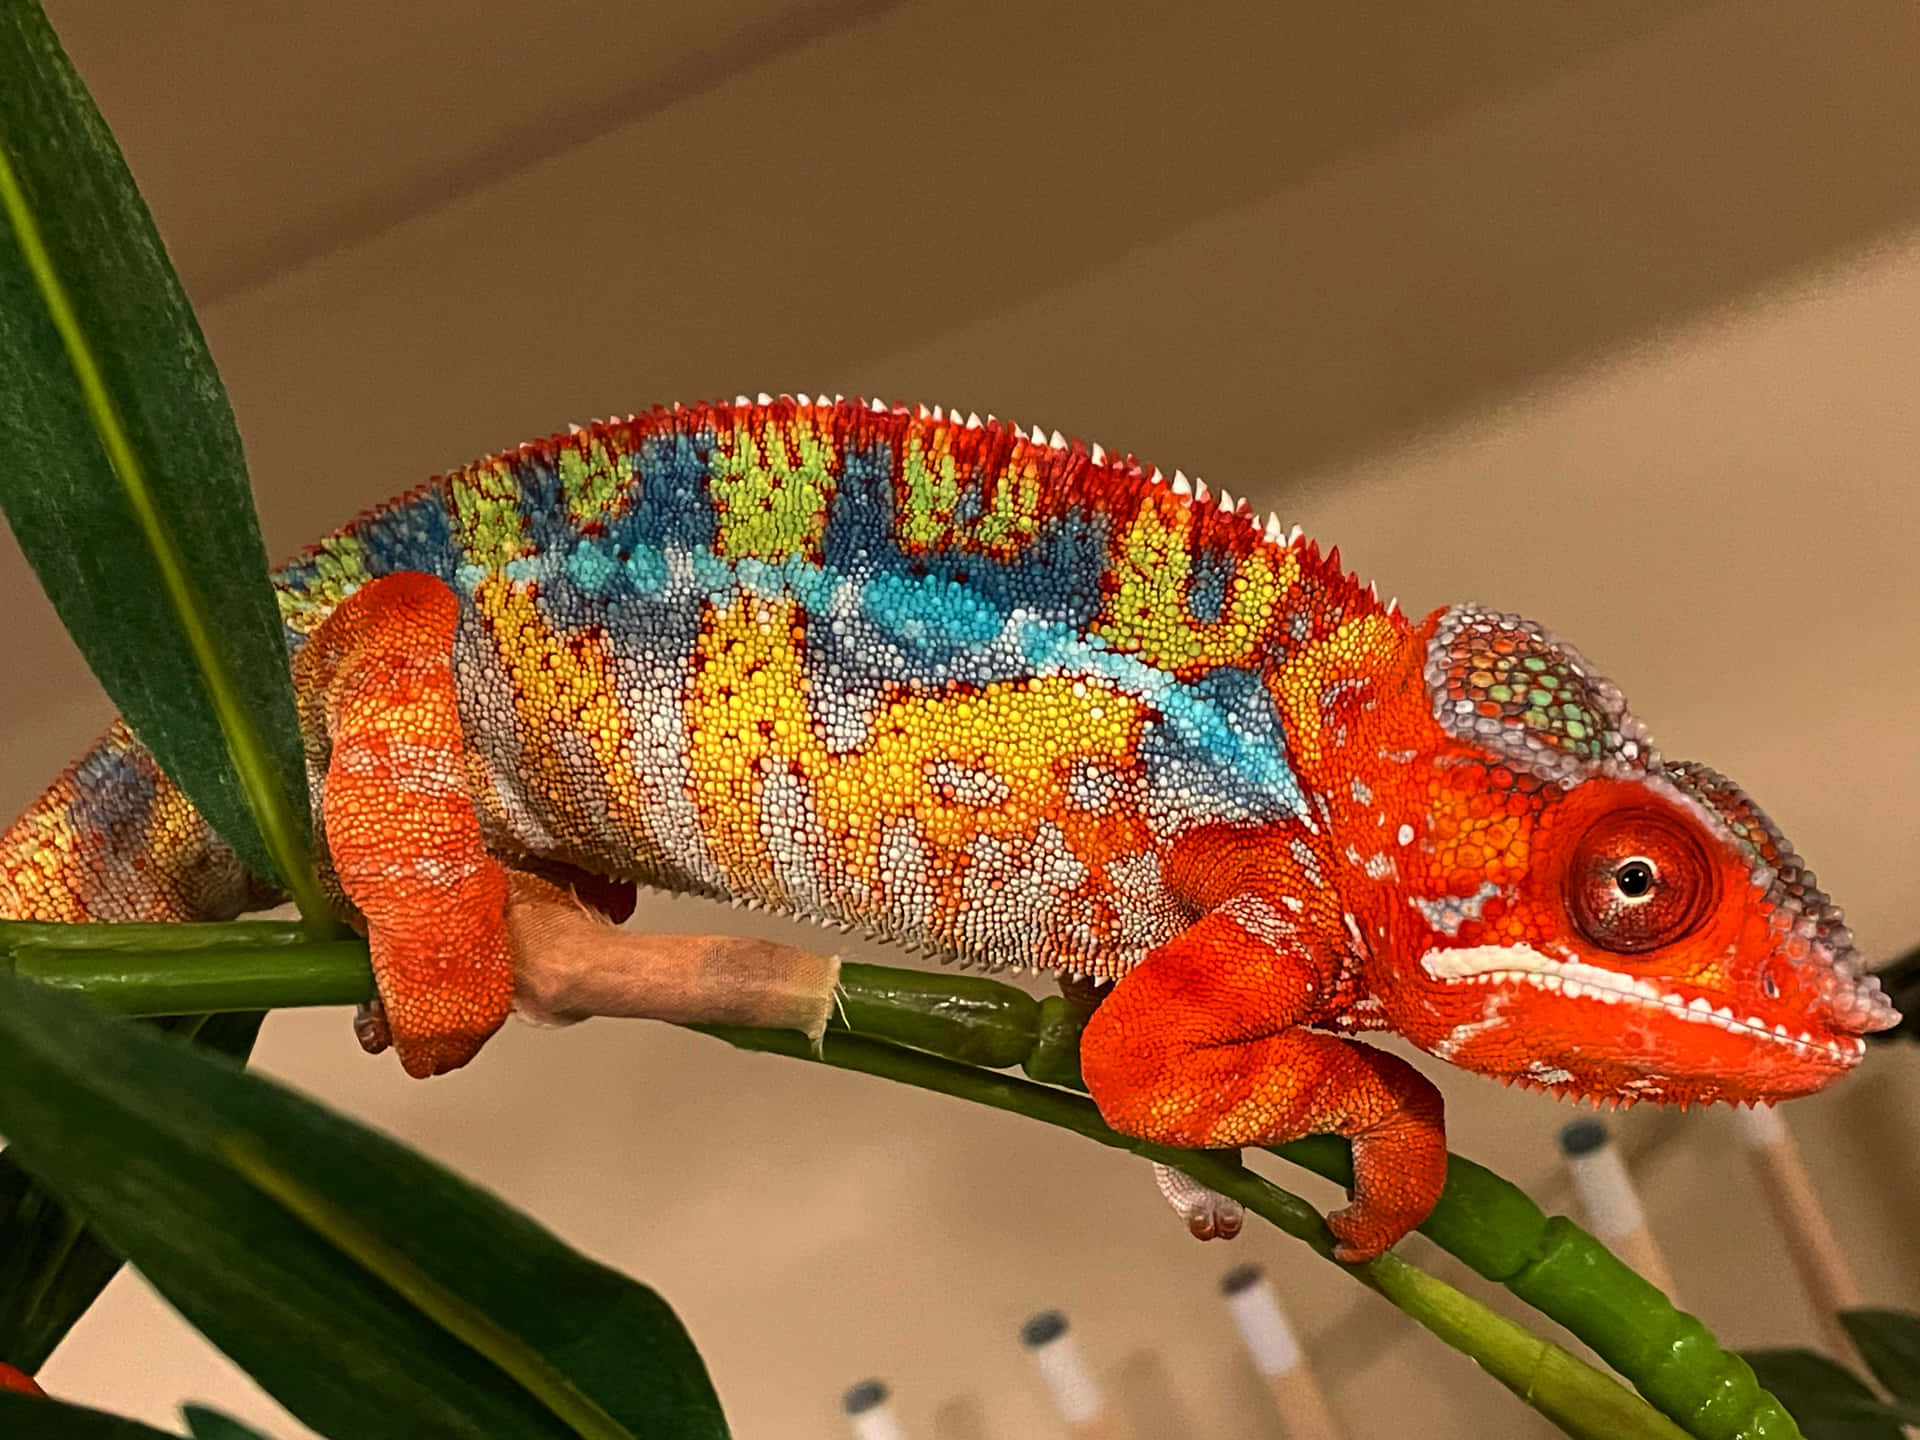 Vibrant Chameleon In Natural Habitat